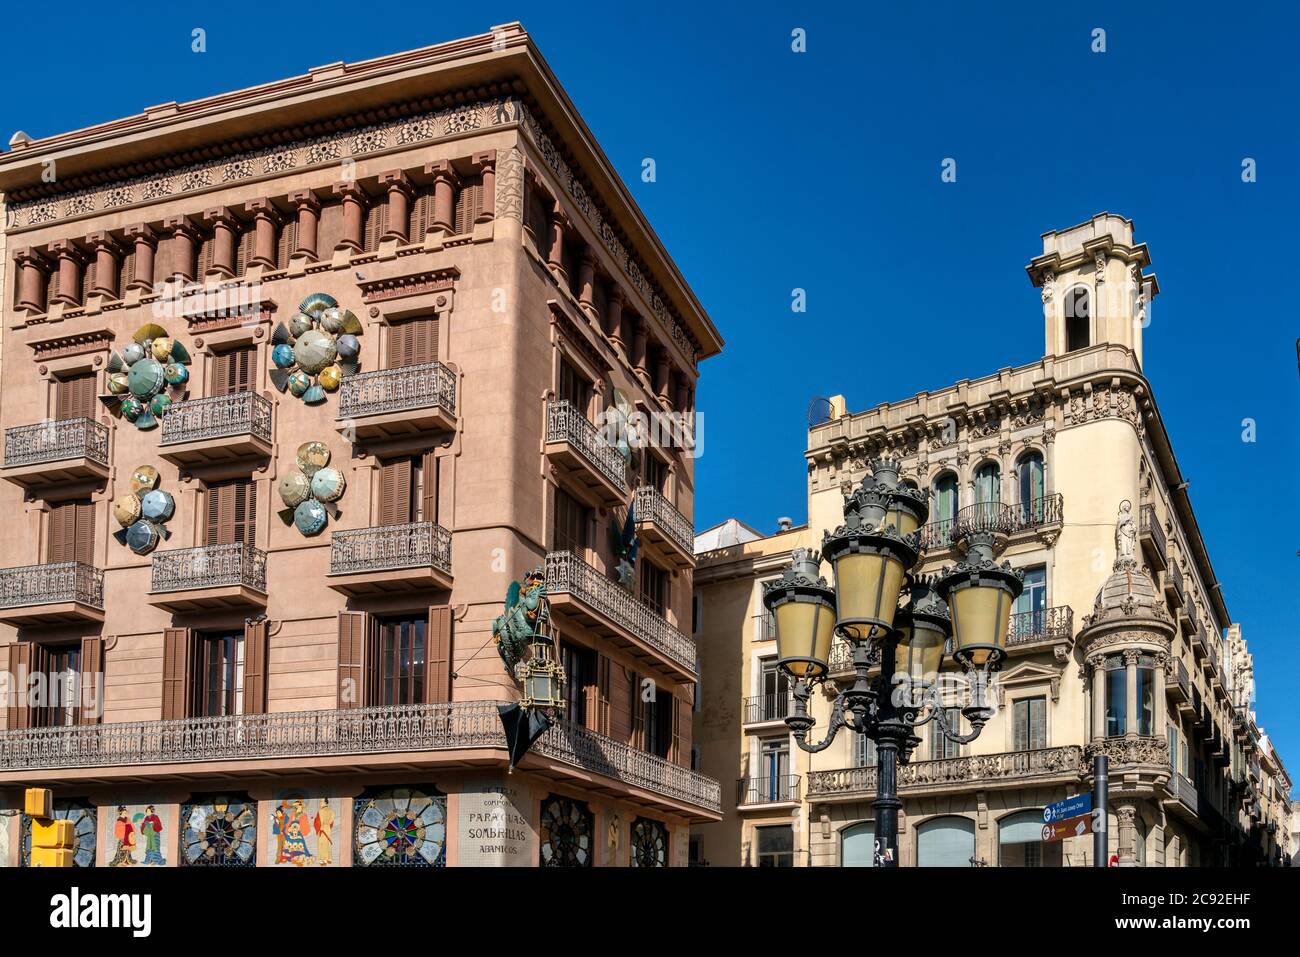 Chinesische Drachen Skulptur an den Wänden eines Hauses mit Sonnenschirmen, Bruno Quadras Gebäude, Las Ramblas, Barcelona Stockfoto